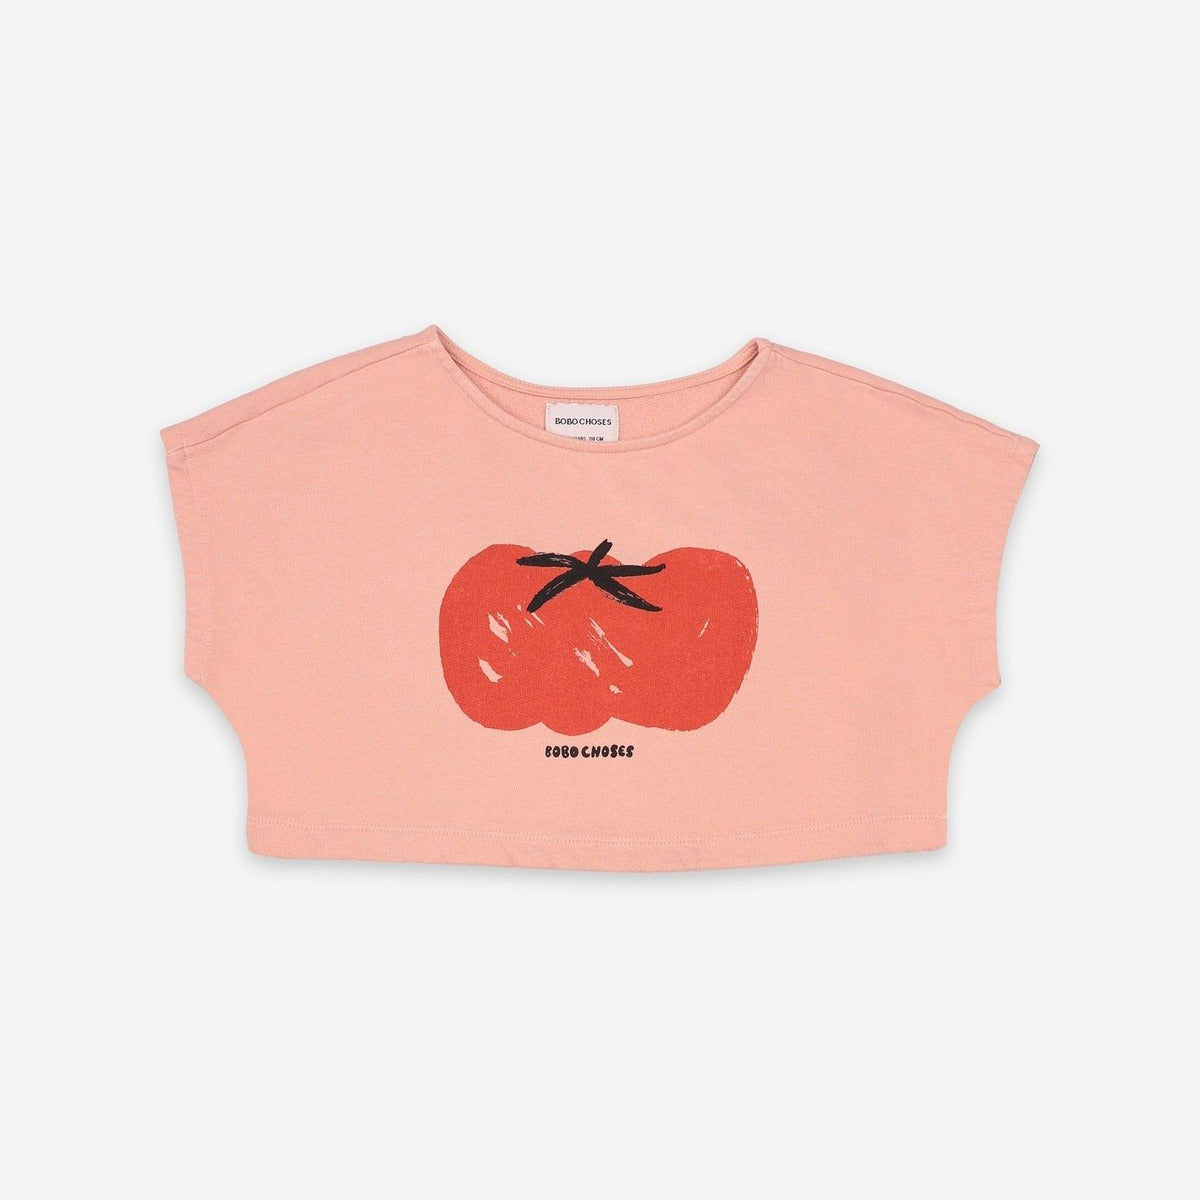 Tomato Cropped Sweatshirt - TAYLOR + MAXBobo Choses